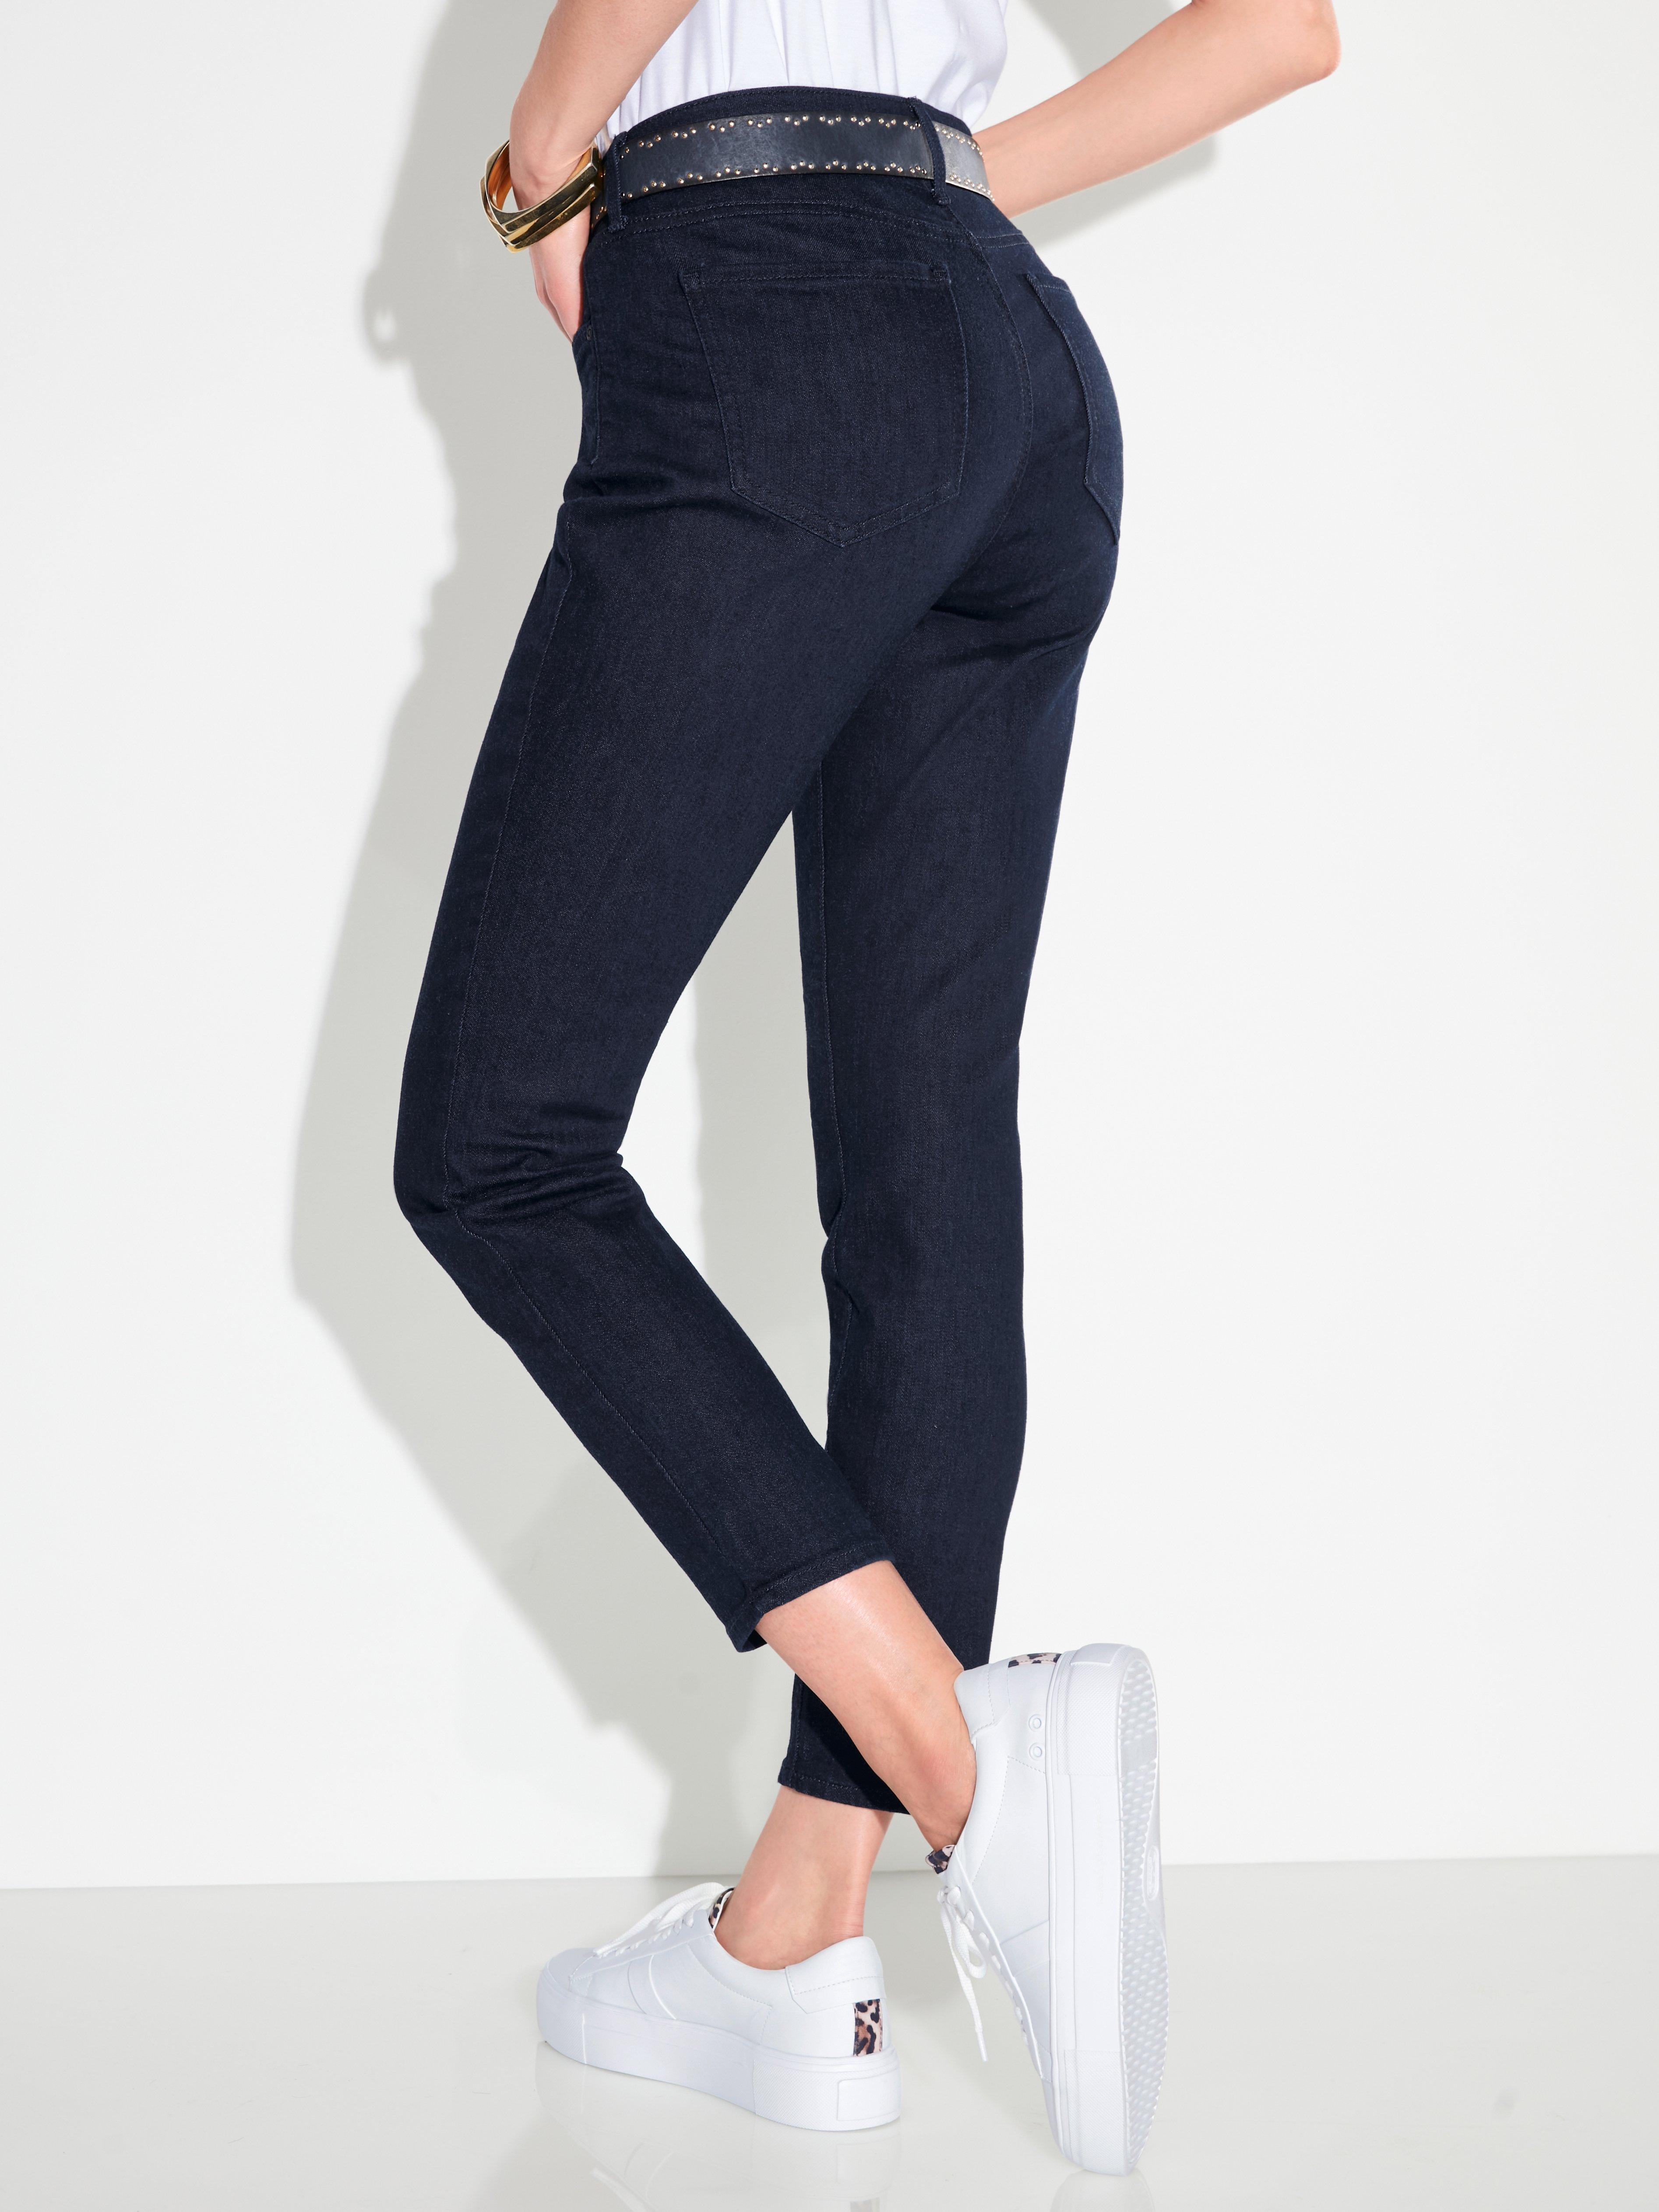 NYDJ - Le jean longueur chevilles modèle Alina Ankle